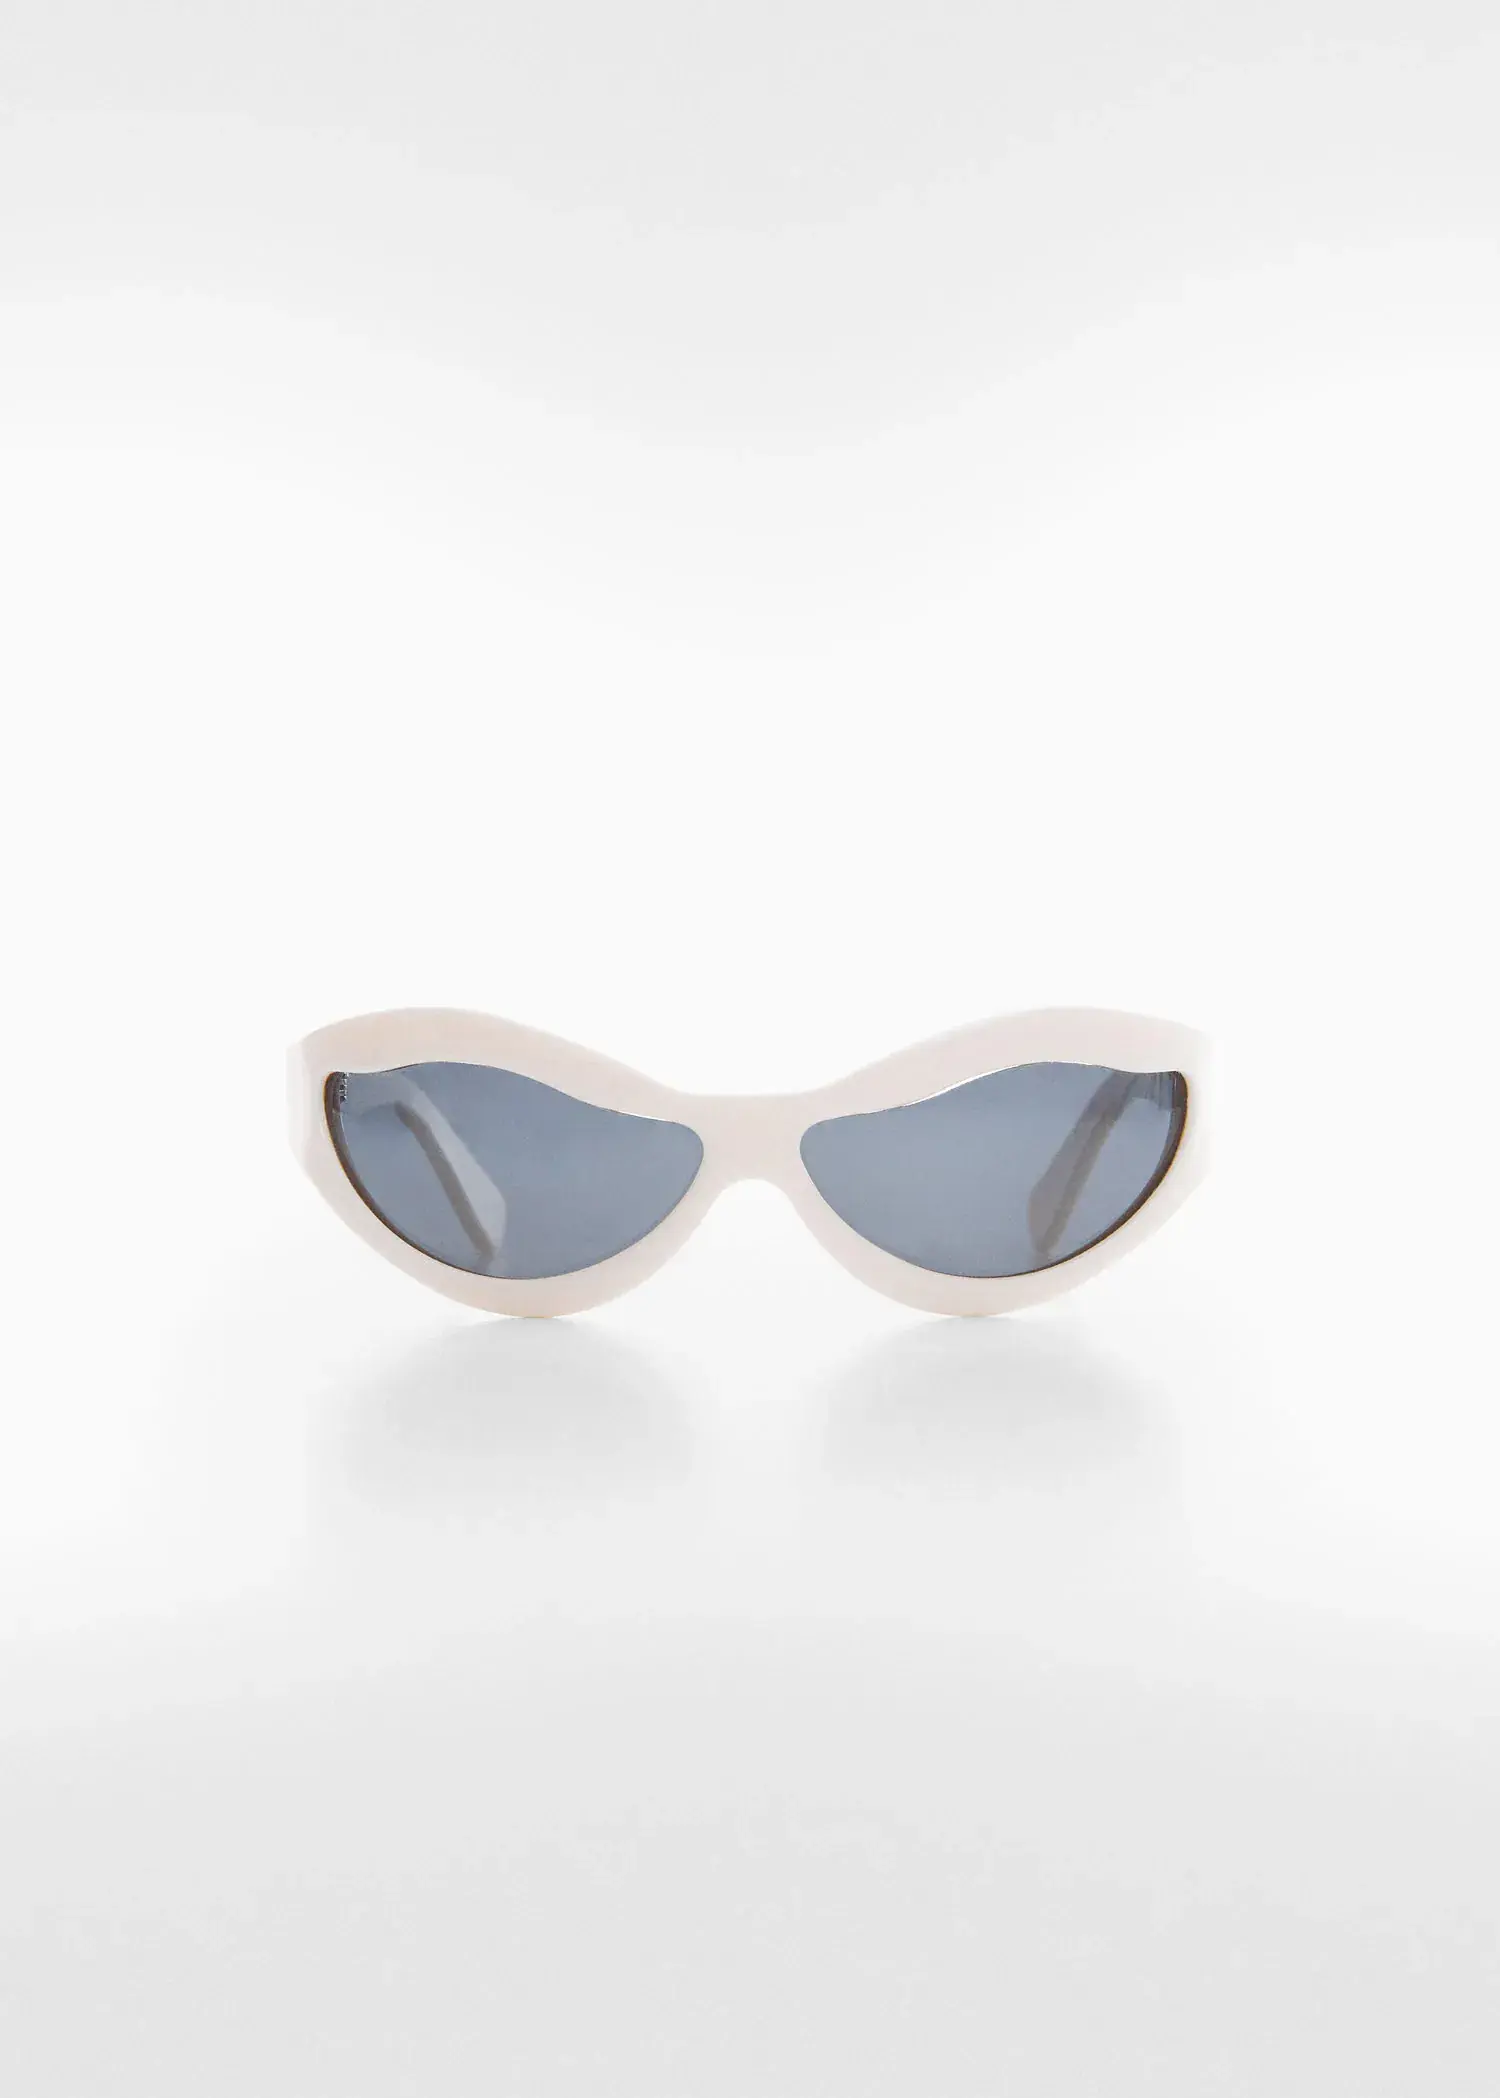 Mango Sonnenbrille mit ungleichmäßiger Glasform. 2